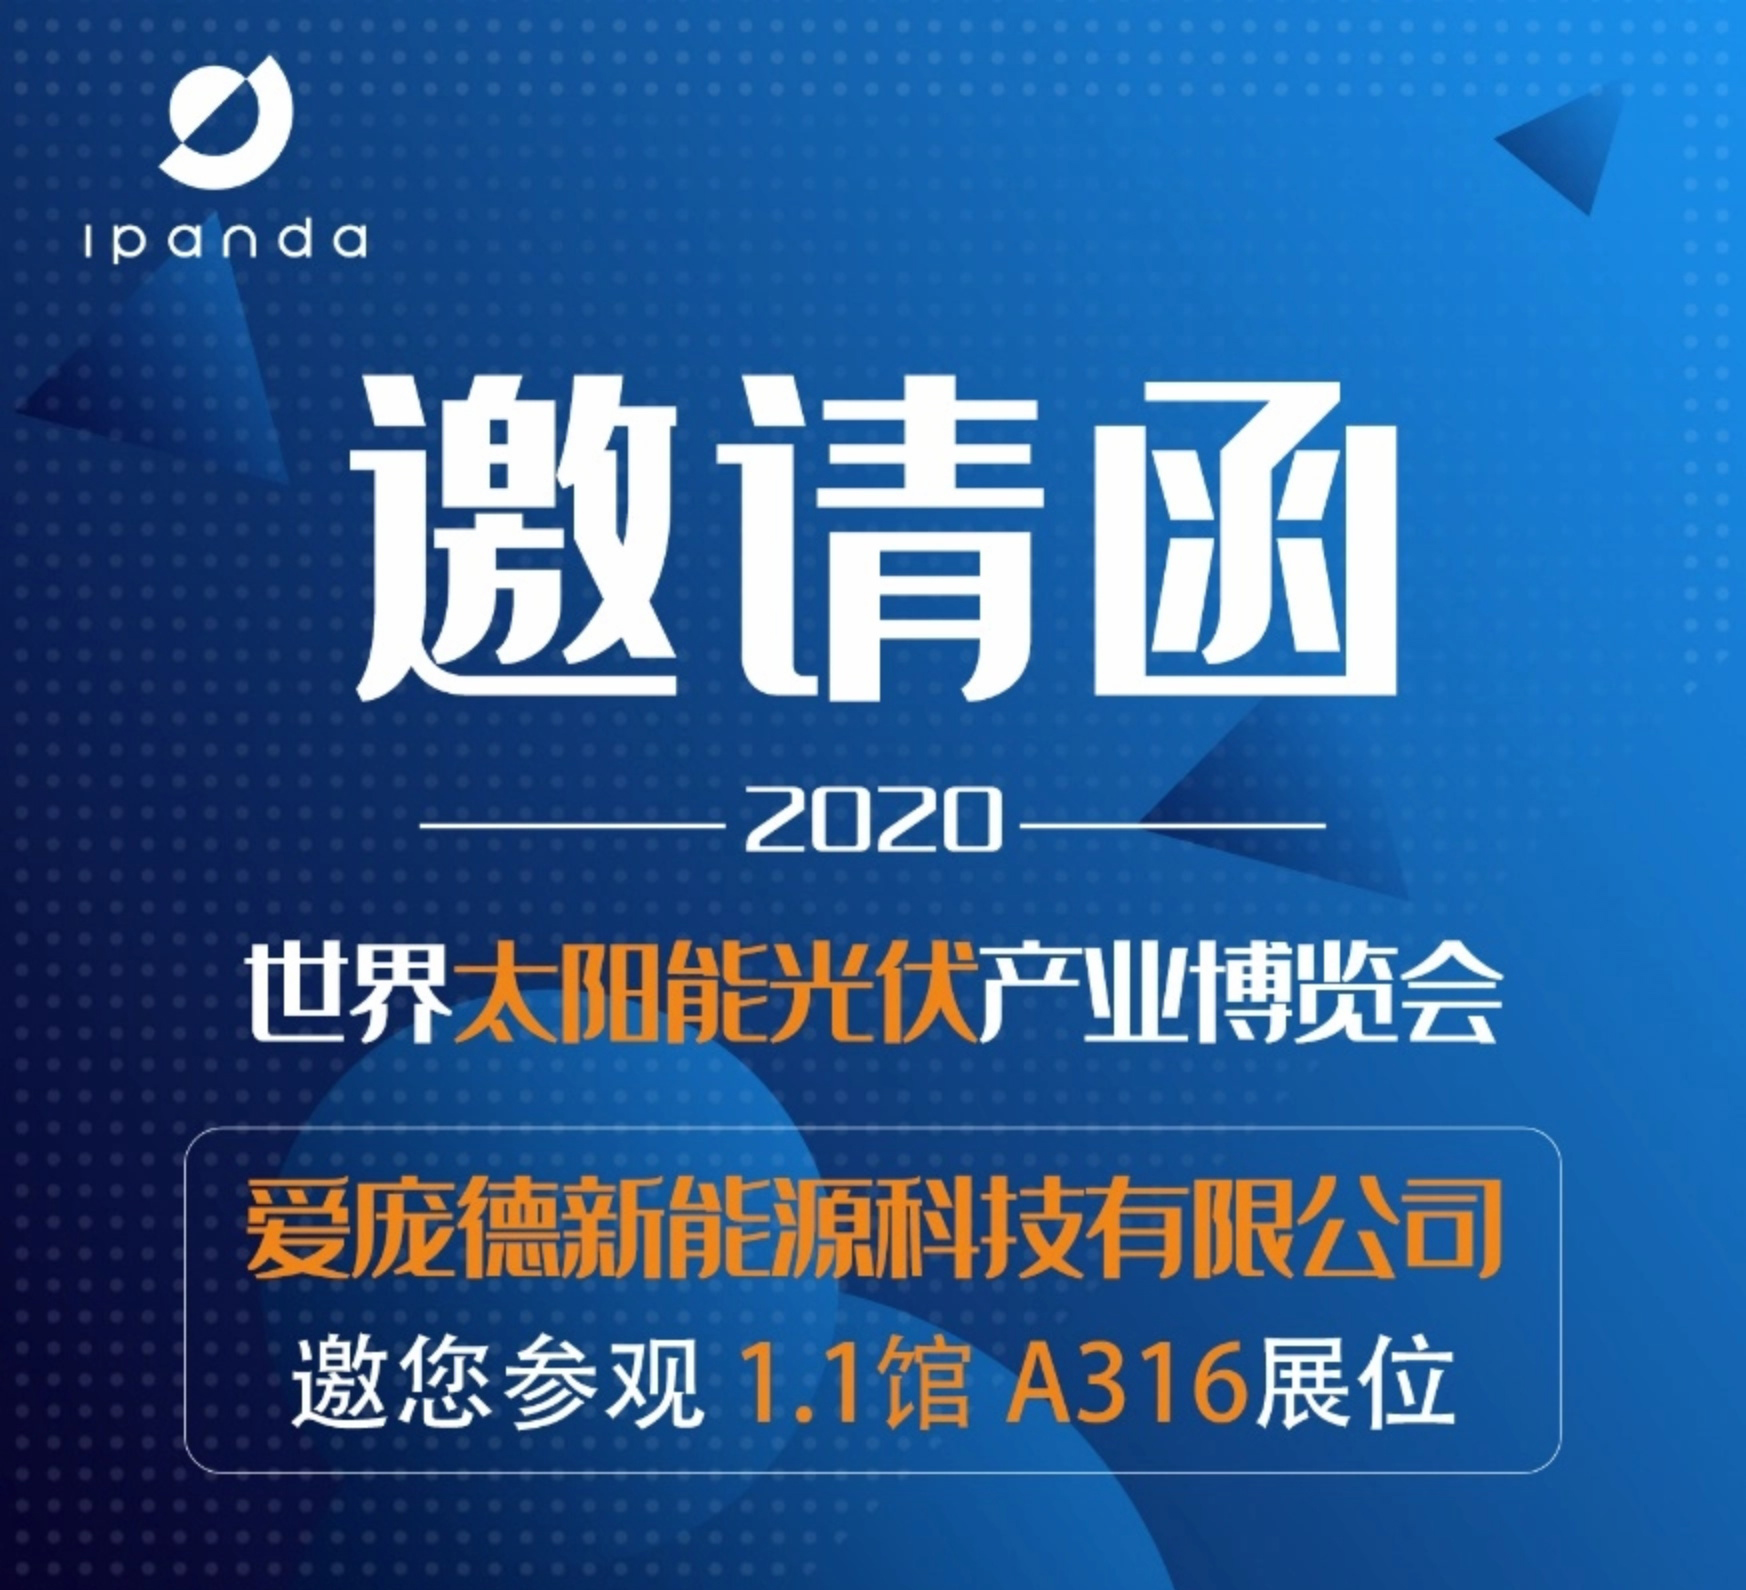 Ipandee y se reunirán en 2020 exposición internacional de energía solar fotovoltaica de Guangzhou